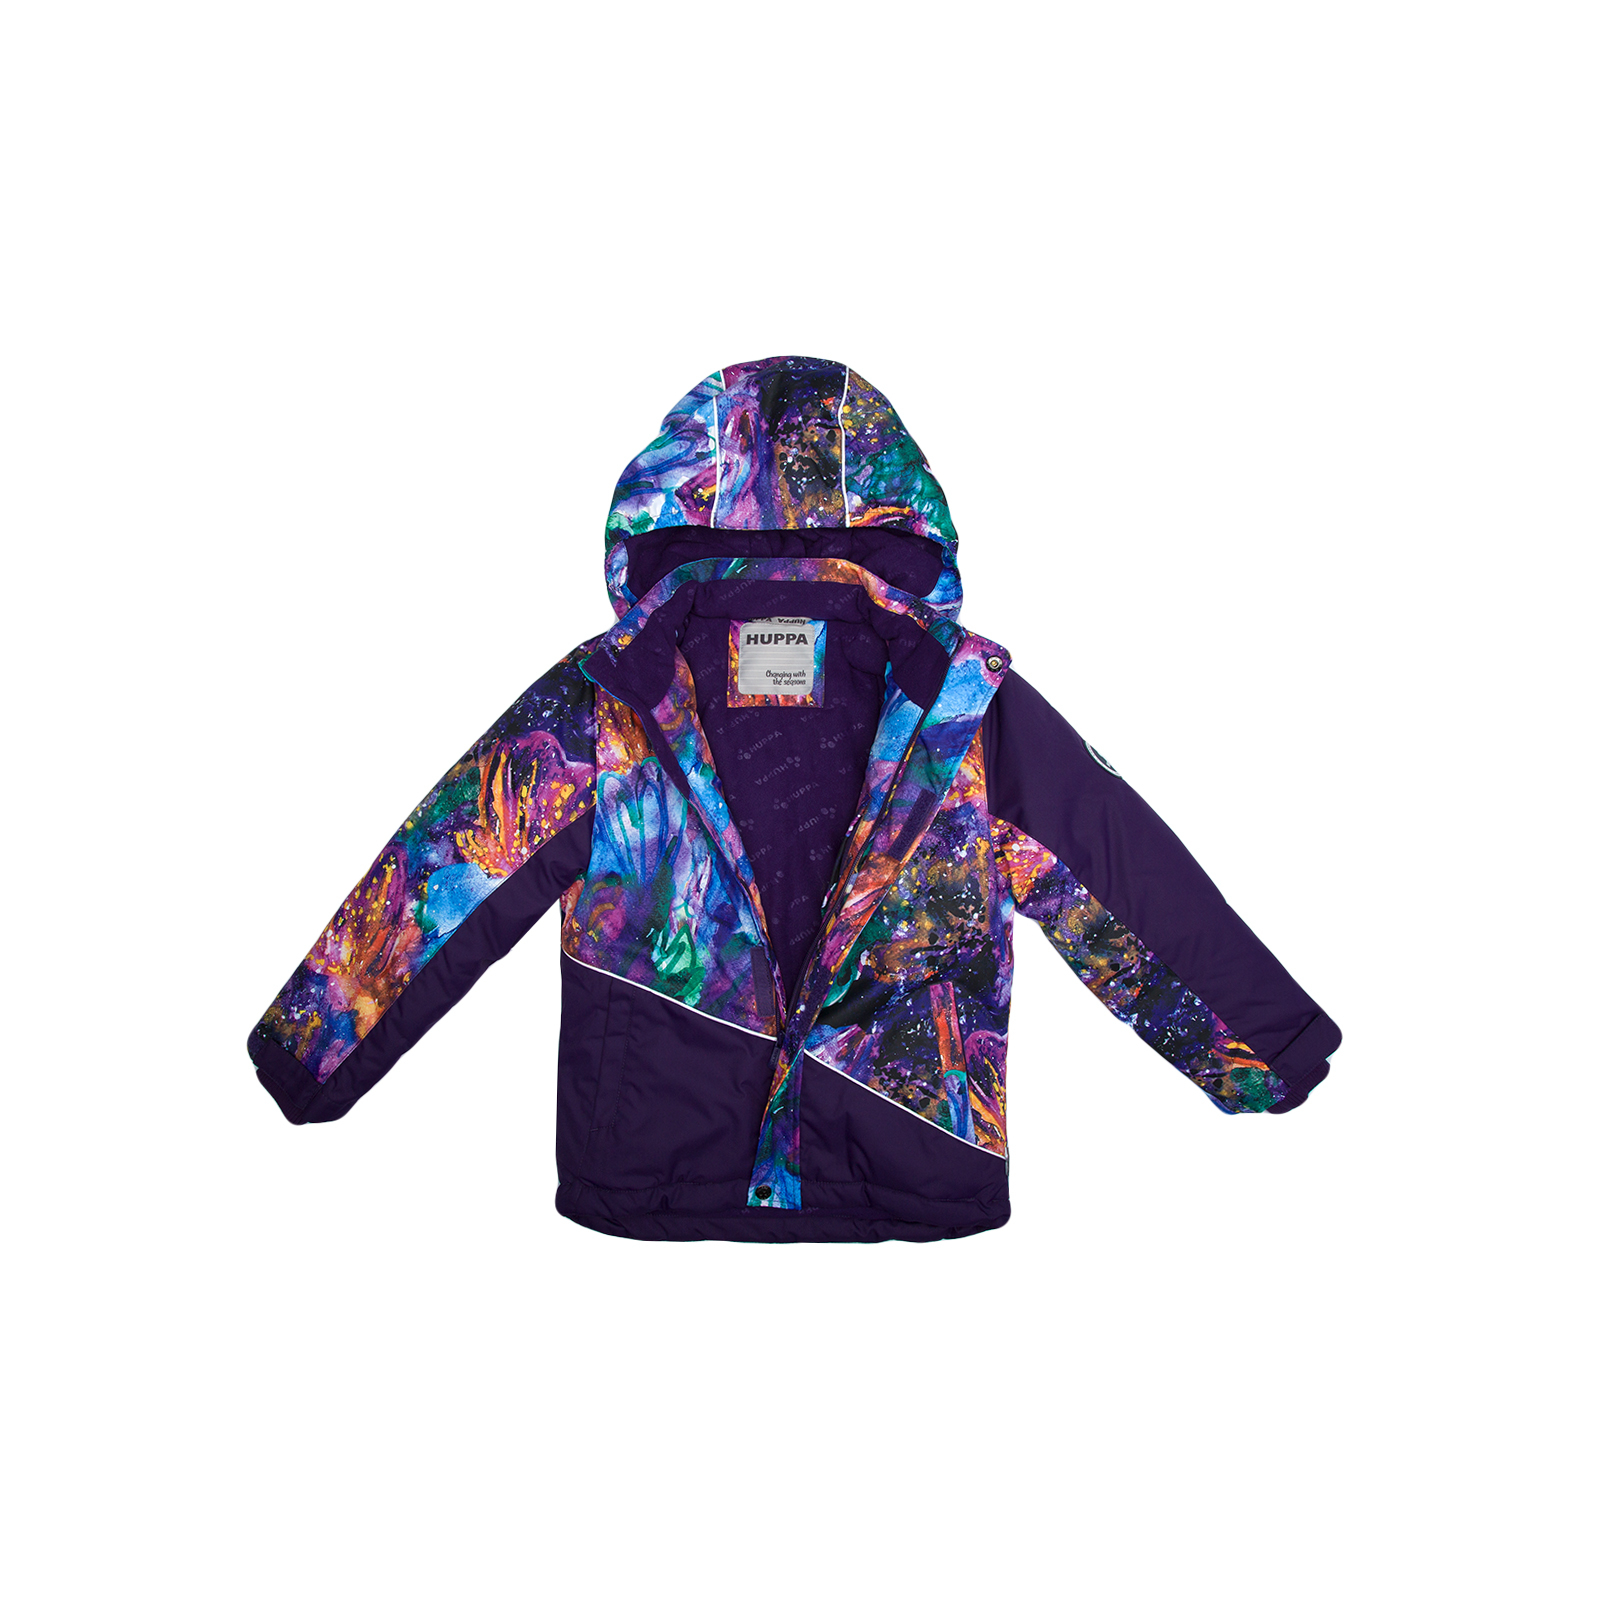 Куртка Huppa ALEX 1 17800130 пурпур с принтом/тёмно-лилoвый 104 (4741468986944) изображение 3